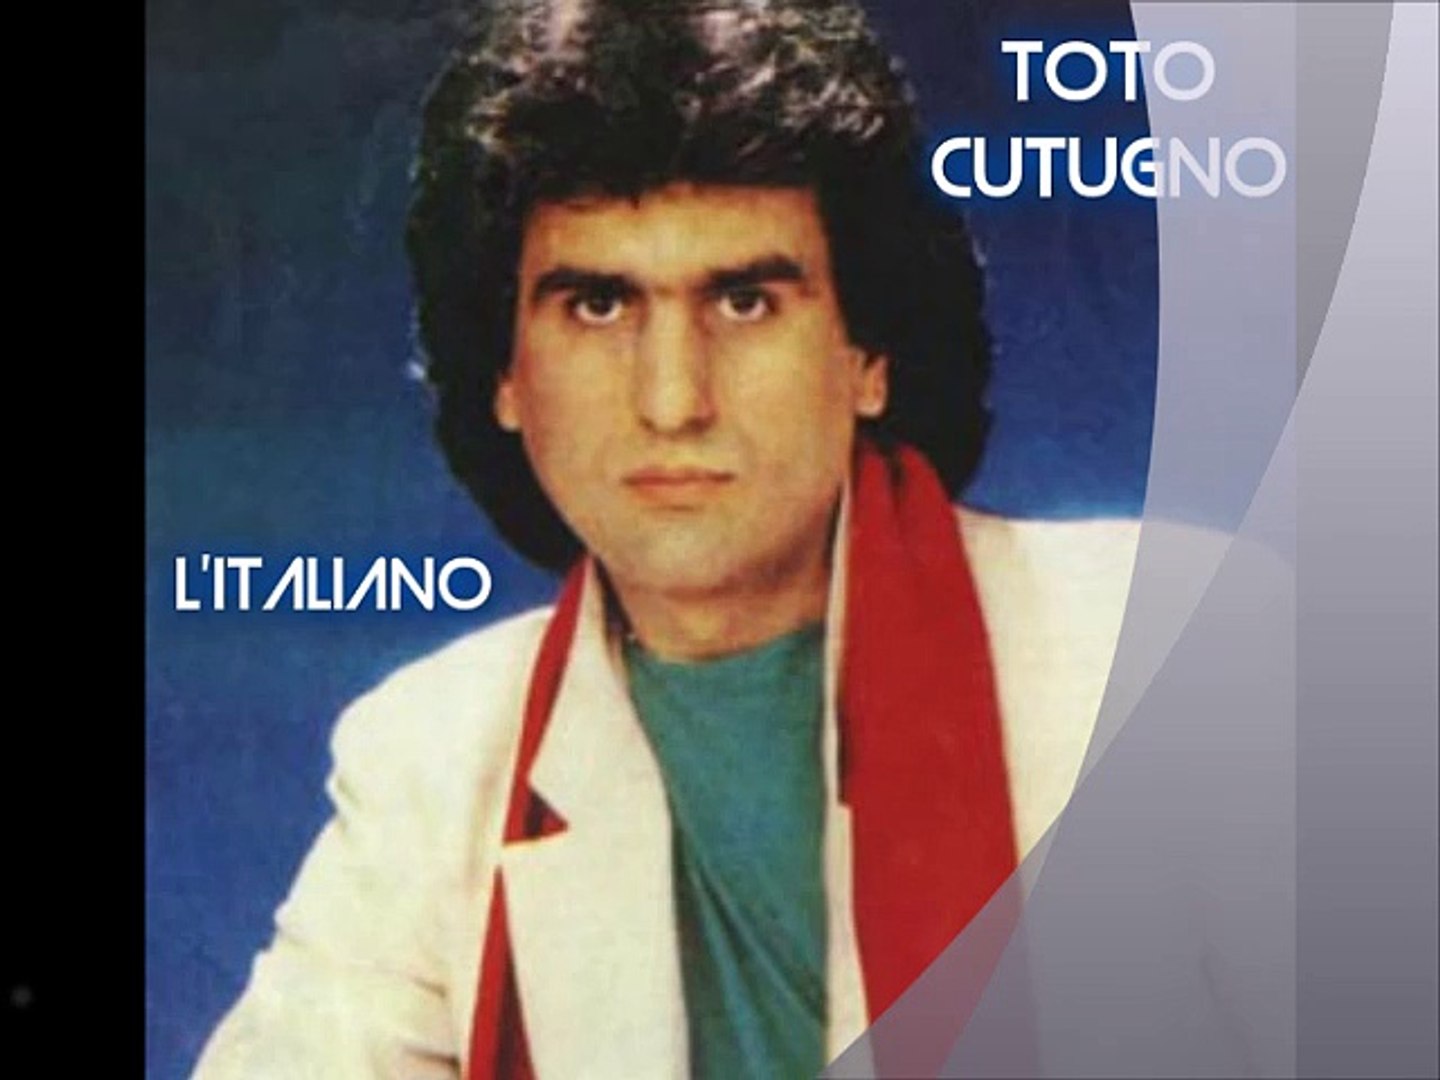 TOTO CUTUGNO - L'Italiano (1983) - Video Dailymotion